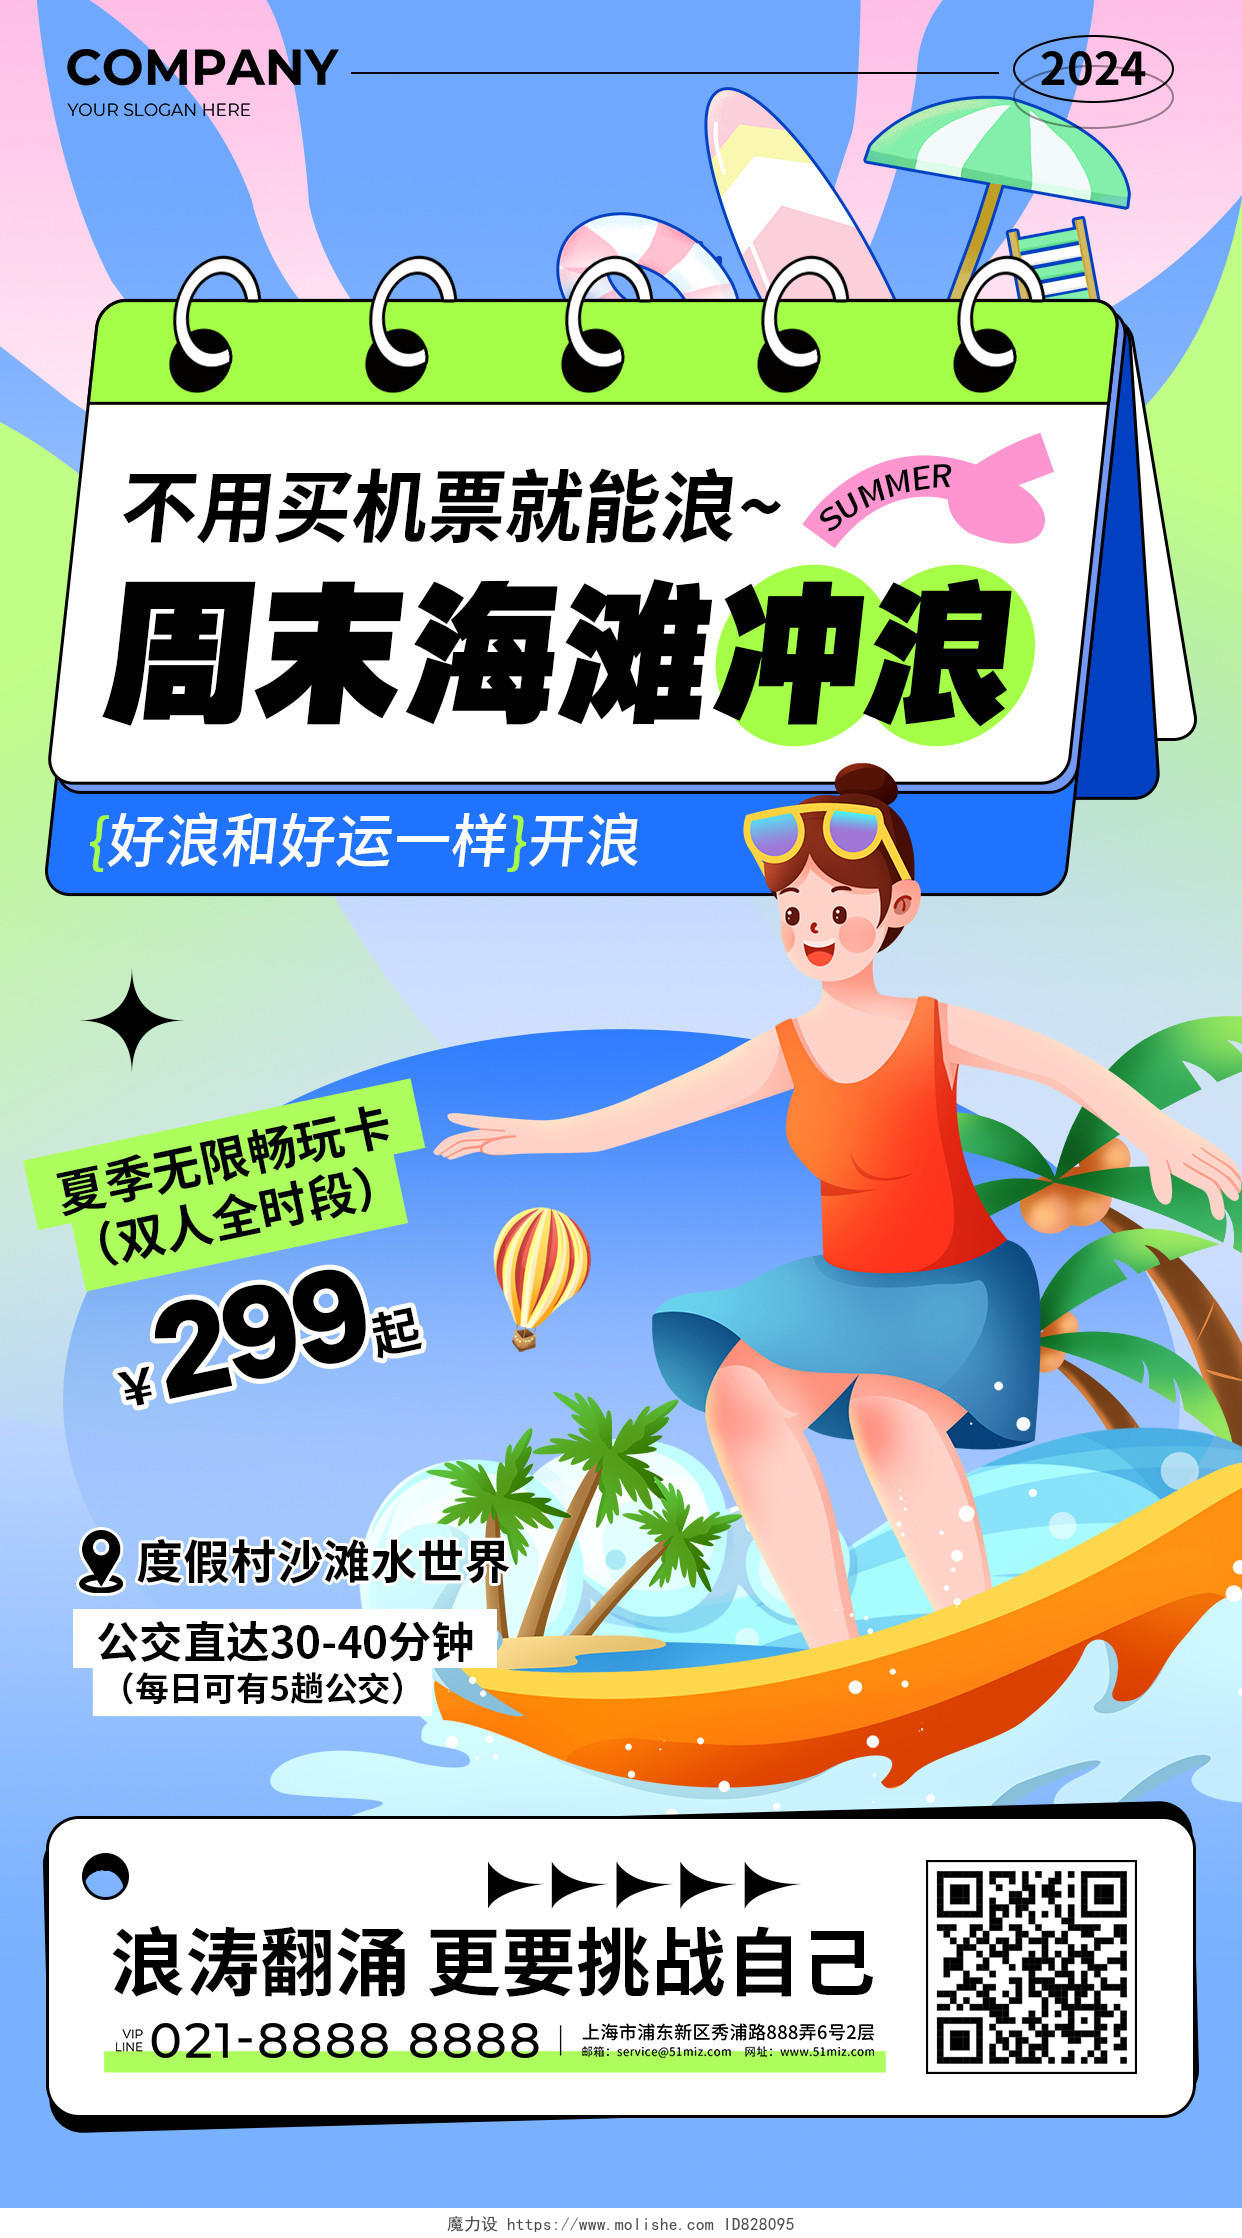 蓝绿色简约风夏季周末海滩冲浪促销活动手机文案海报夏天